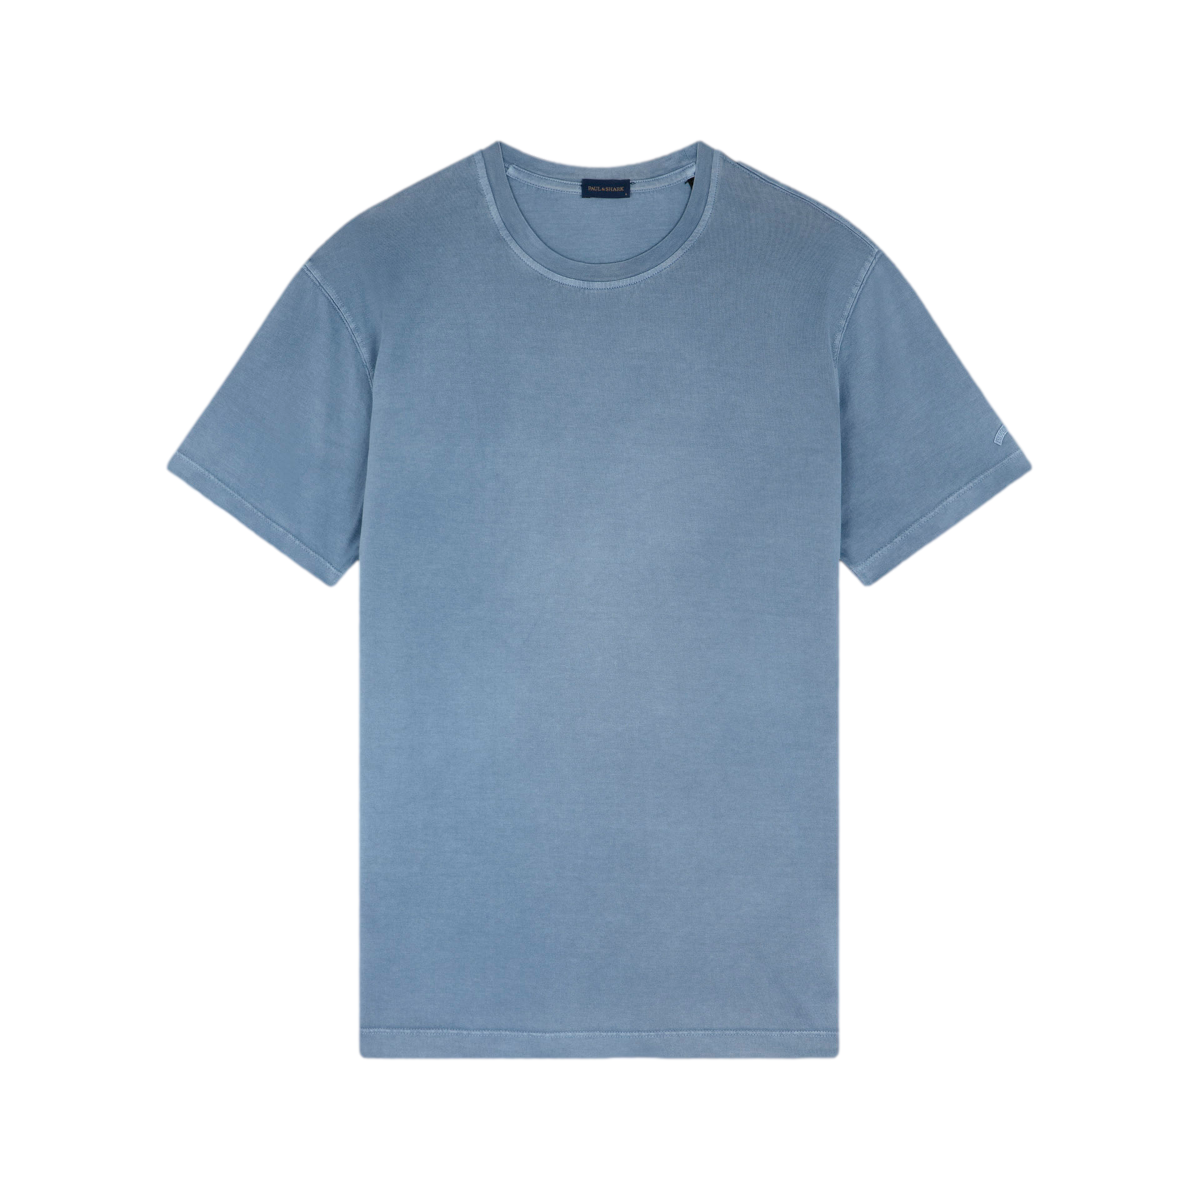 Paul & Shark GD Cotton Jersey T-Shirt 635 Dark Denim